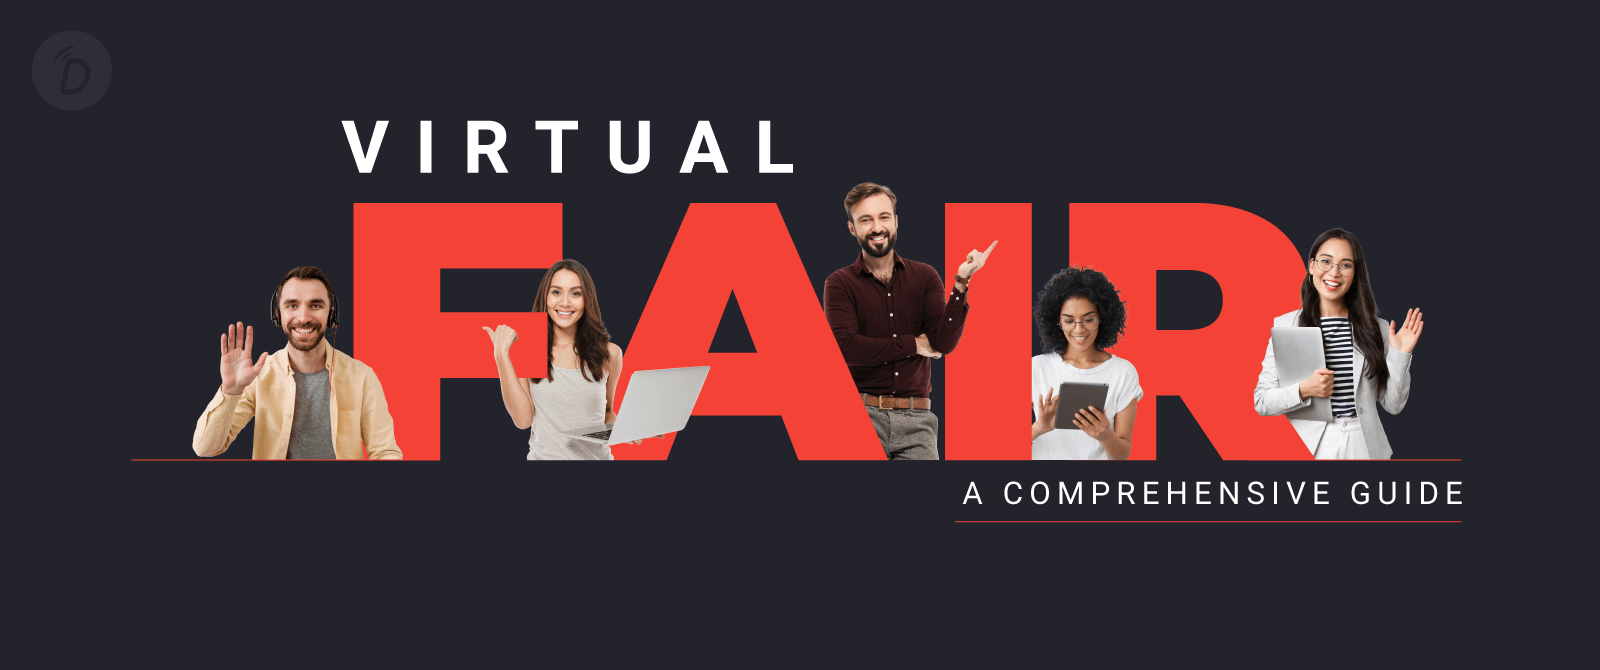 Virtual Fair – A Comprehensive Guide